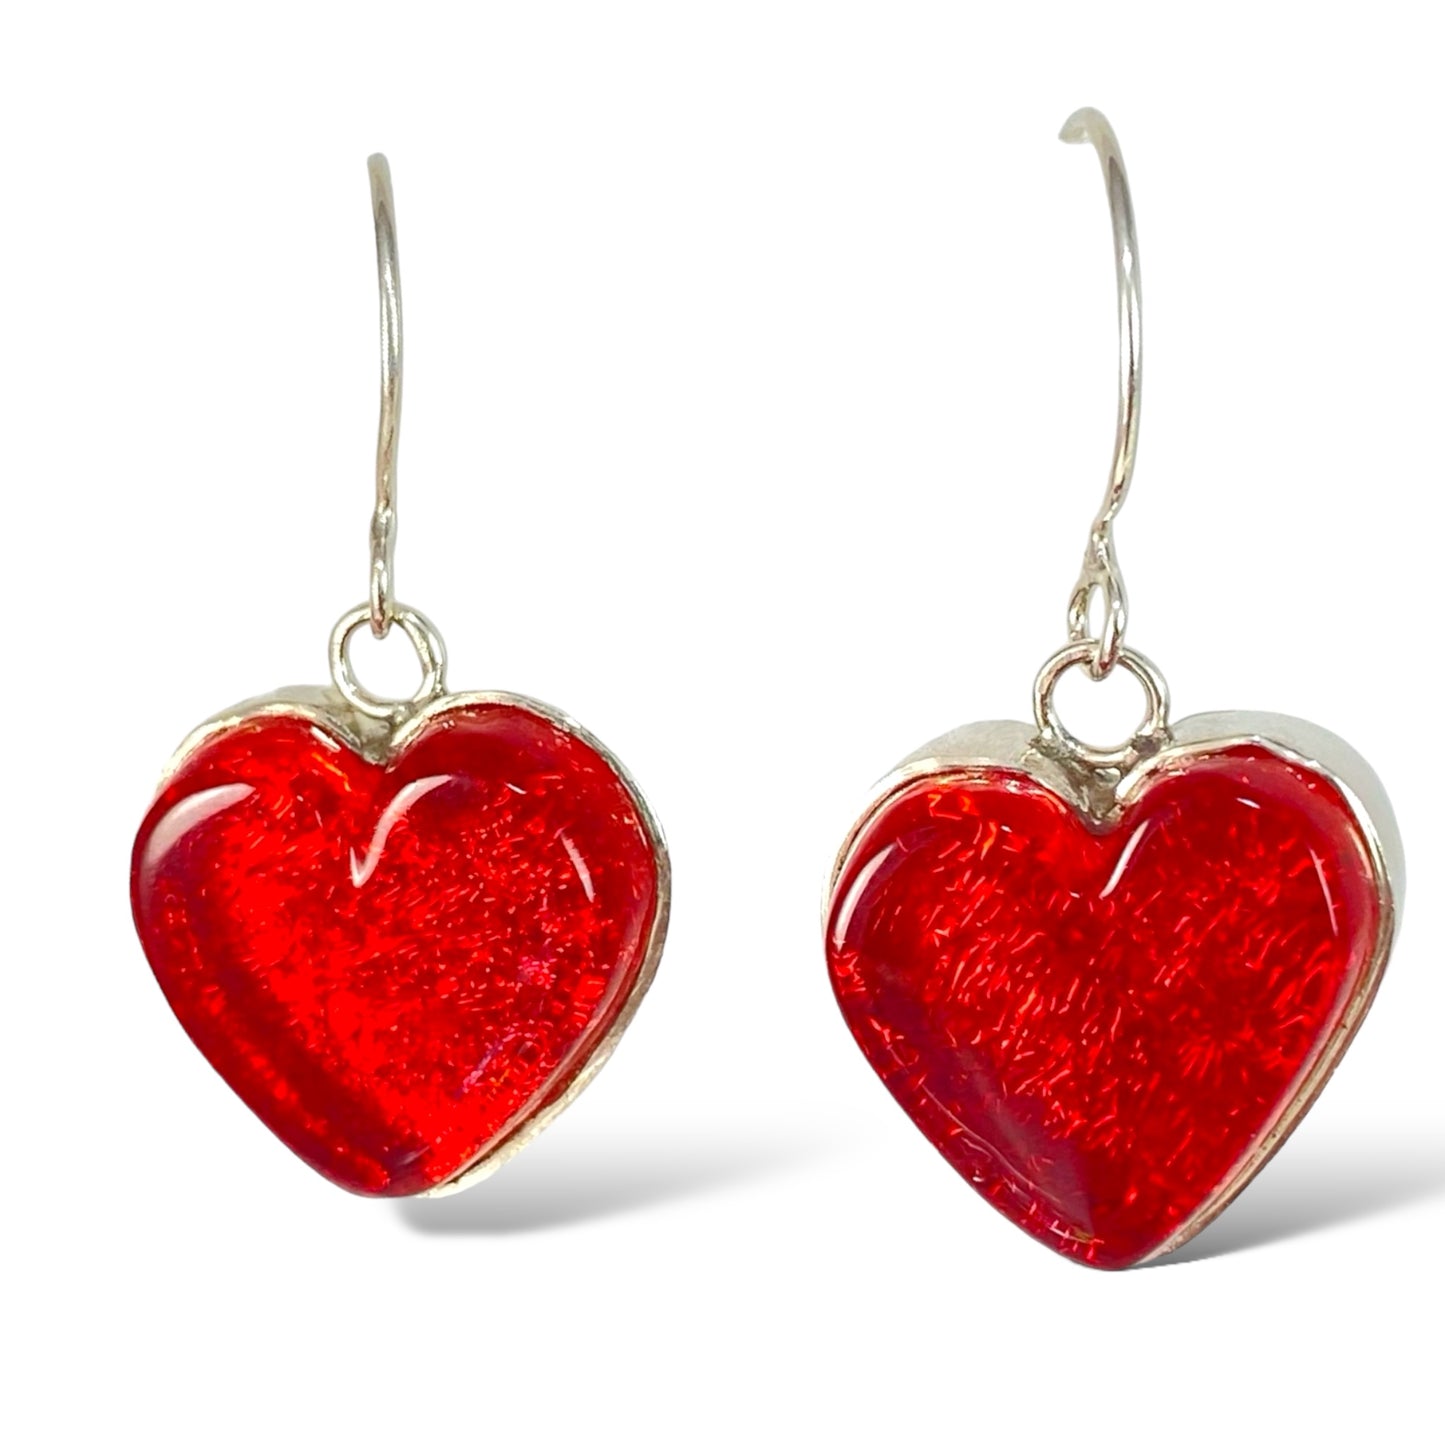 Heart Earrings in Cherry